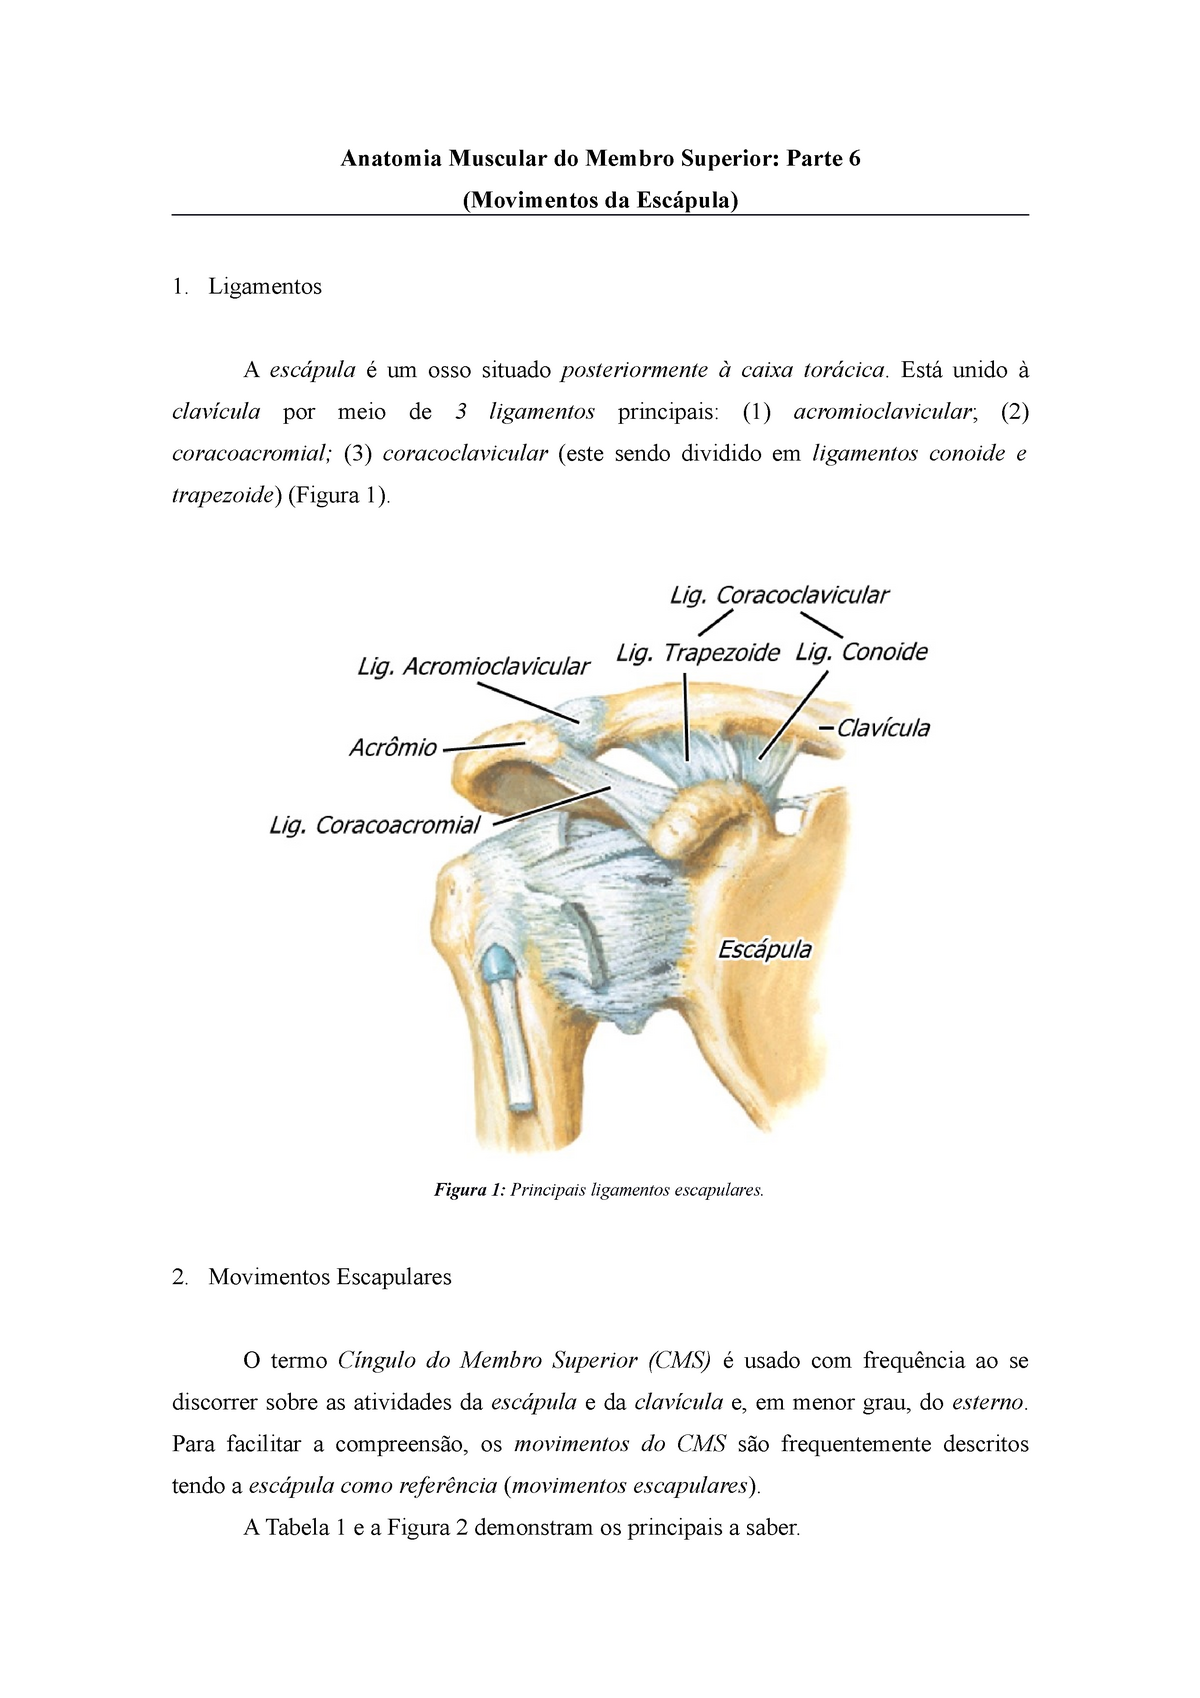 anatomia da escapula - Anatomia I